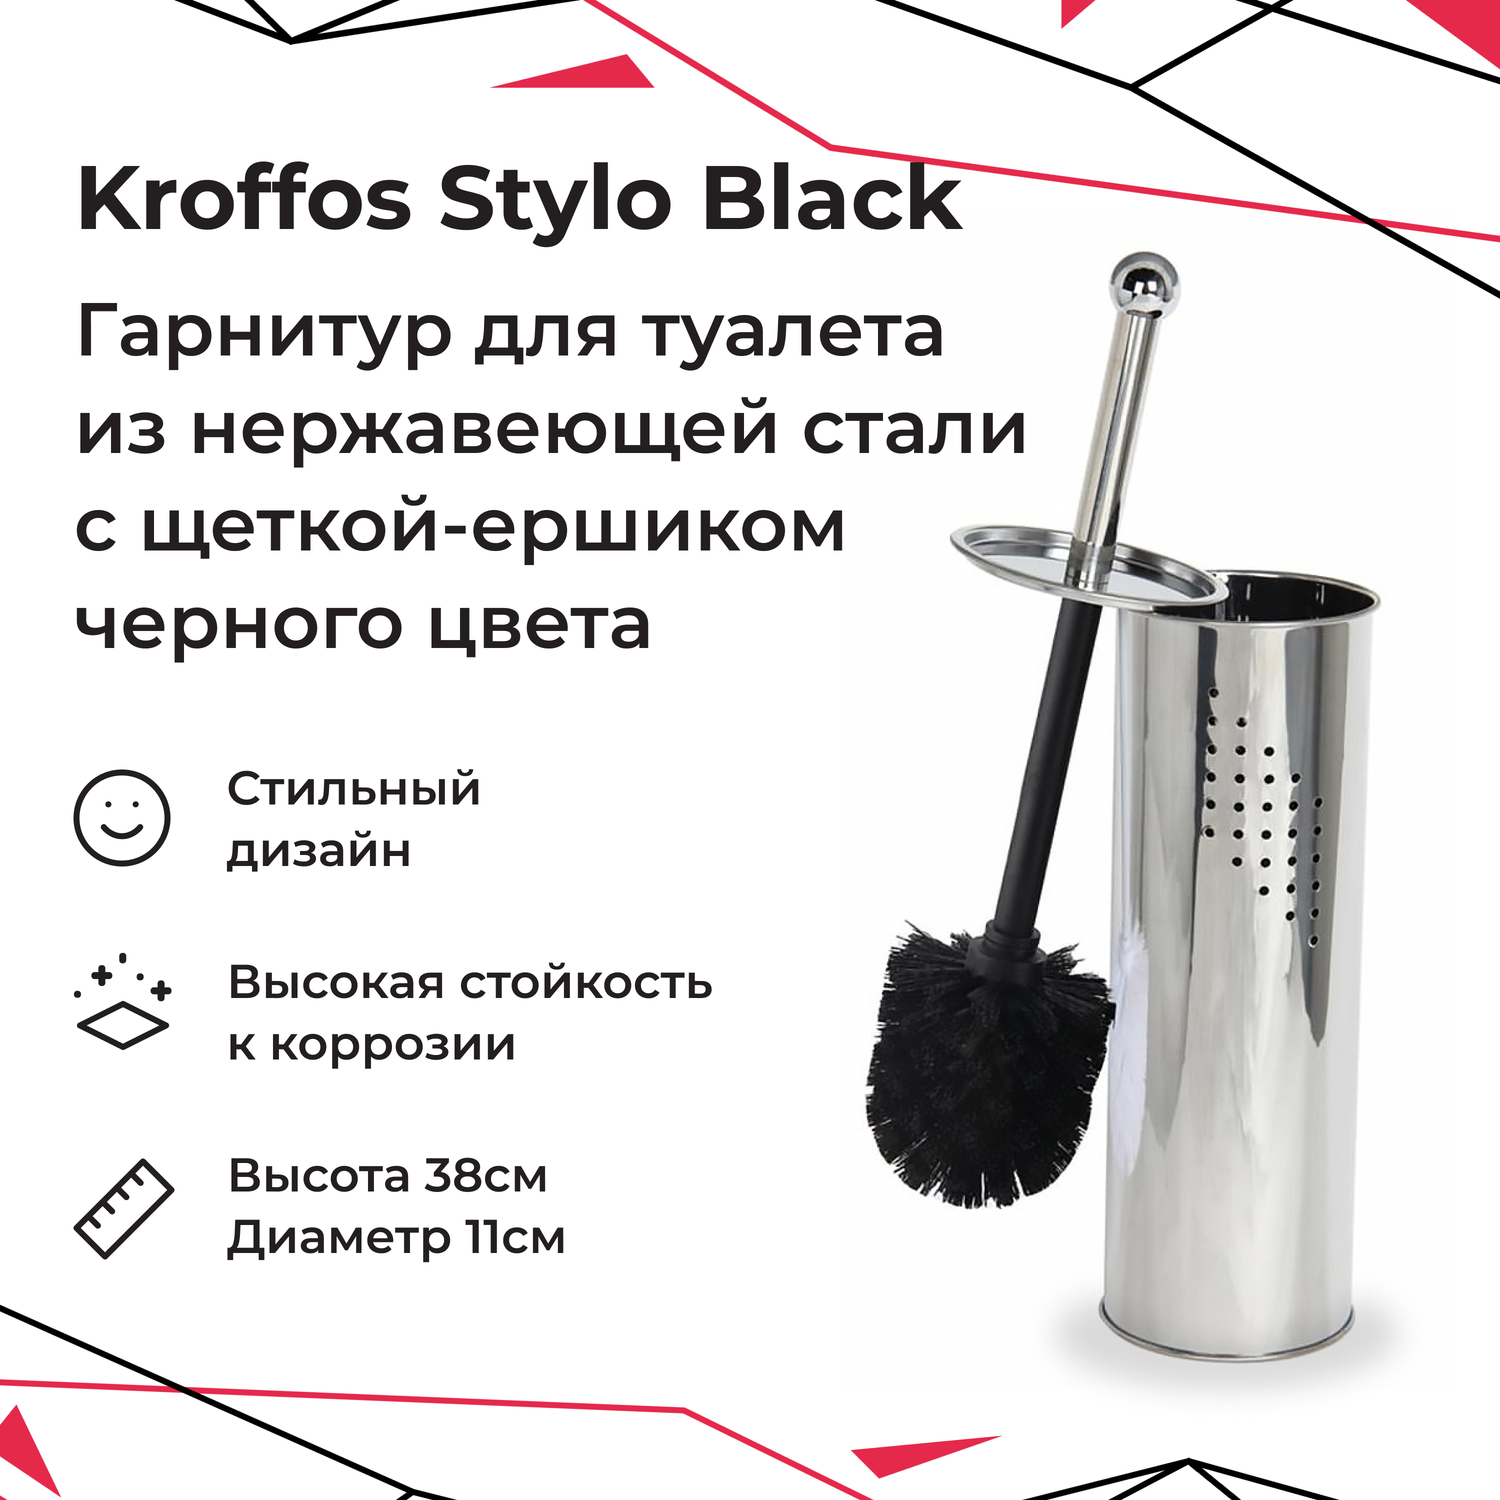 Гарнитур для туалета KROFFOS stylo black стальной стакан черный ворс - фото 1